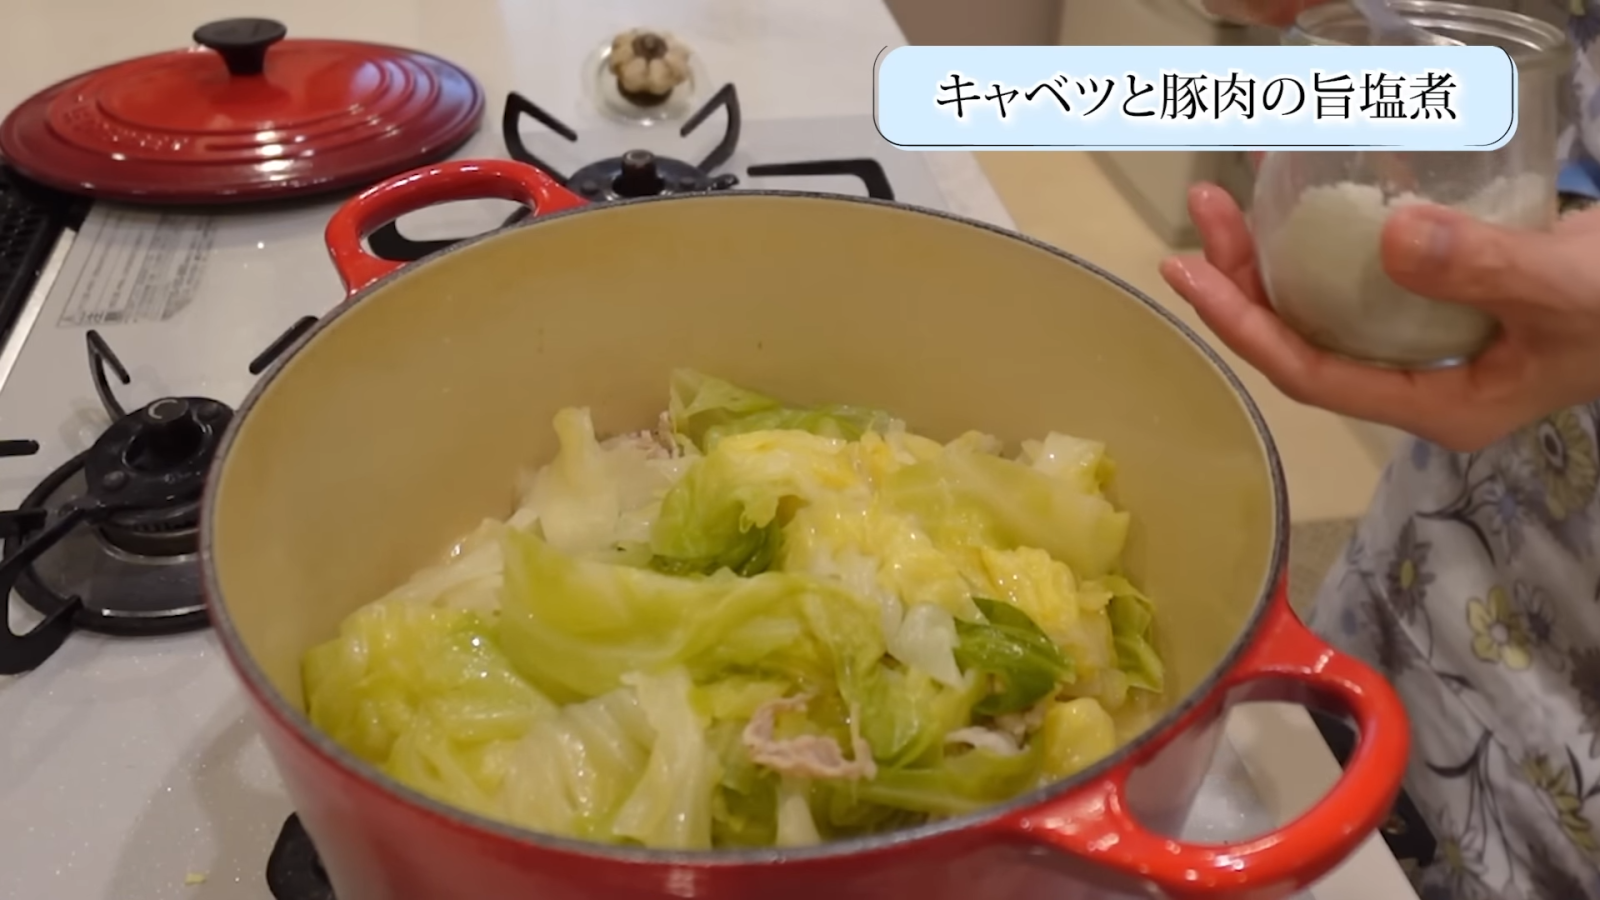 鍋にあるキャベツと豚肉を菜箸で混ぜ合わせる女性